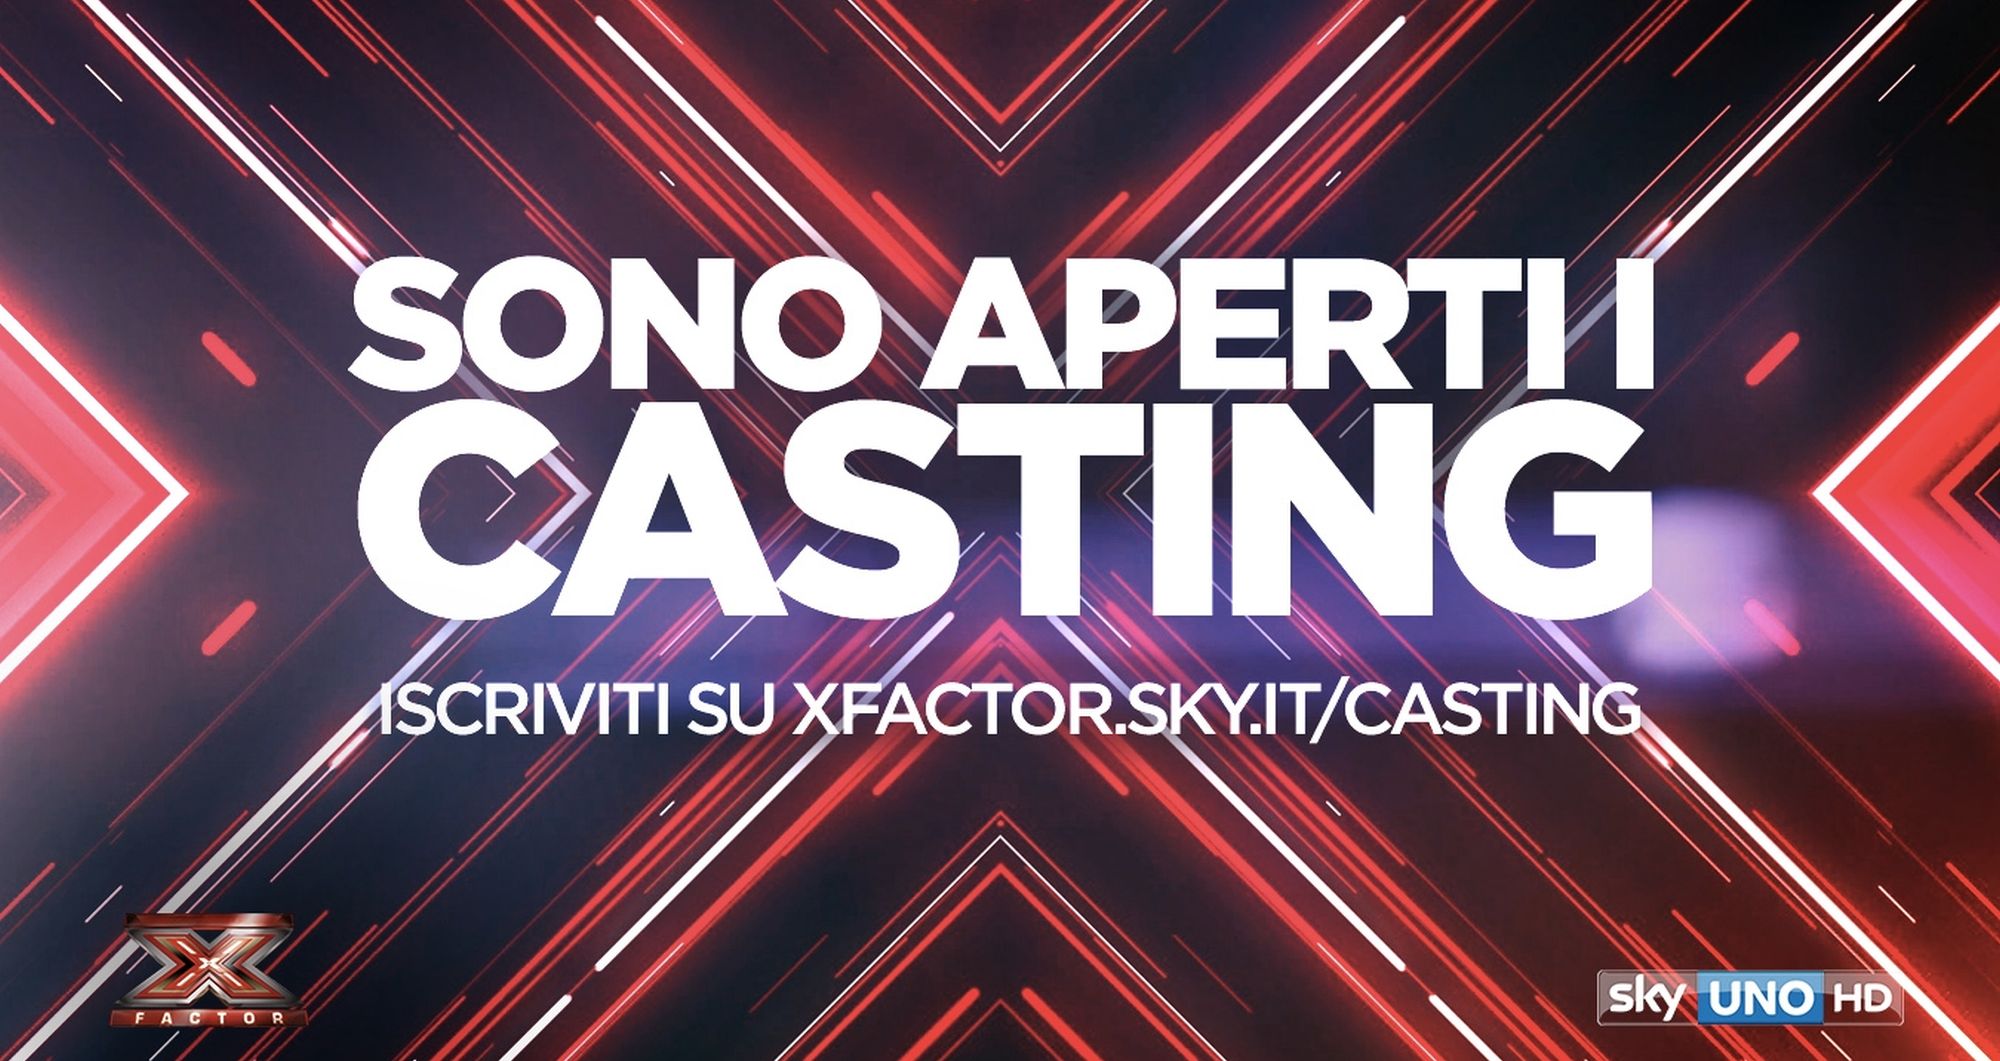 Giudici X Factor 2020: nuovi nomi e chi sono